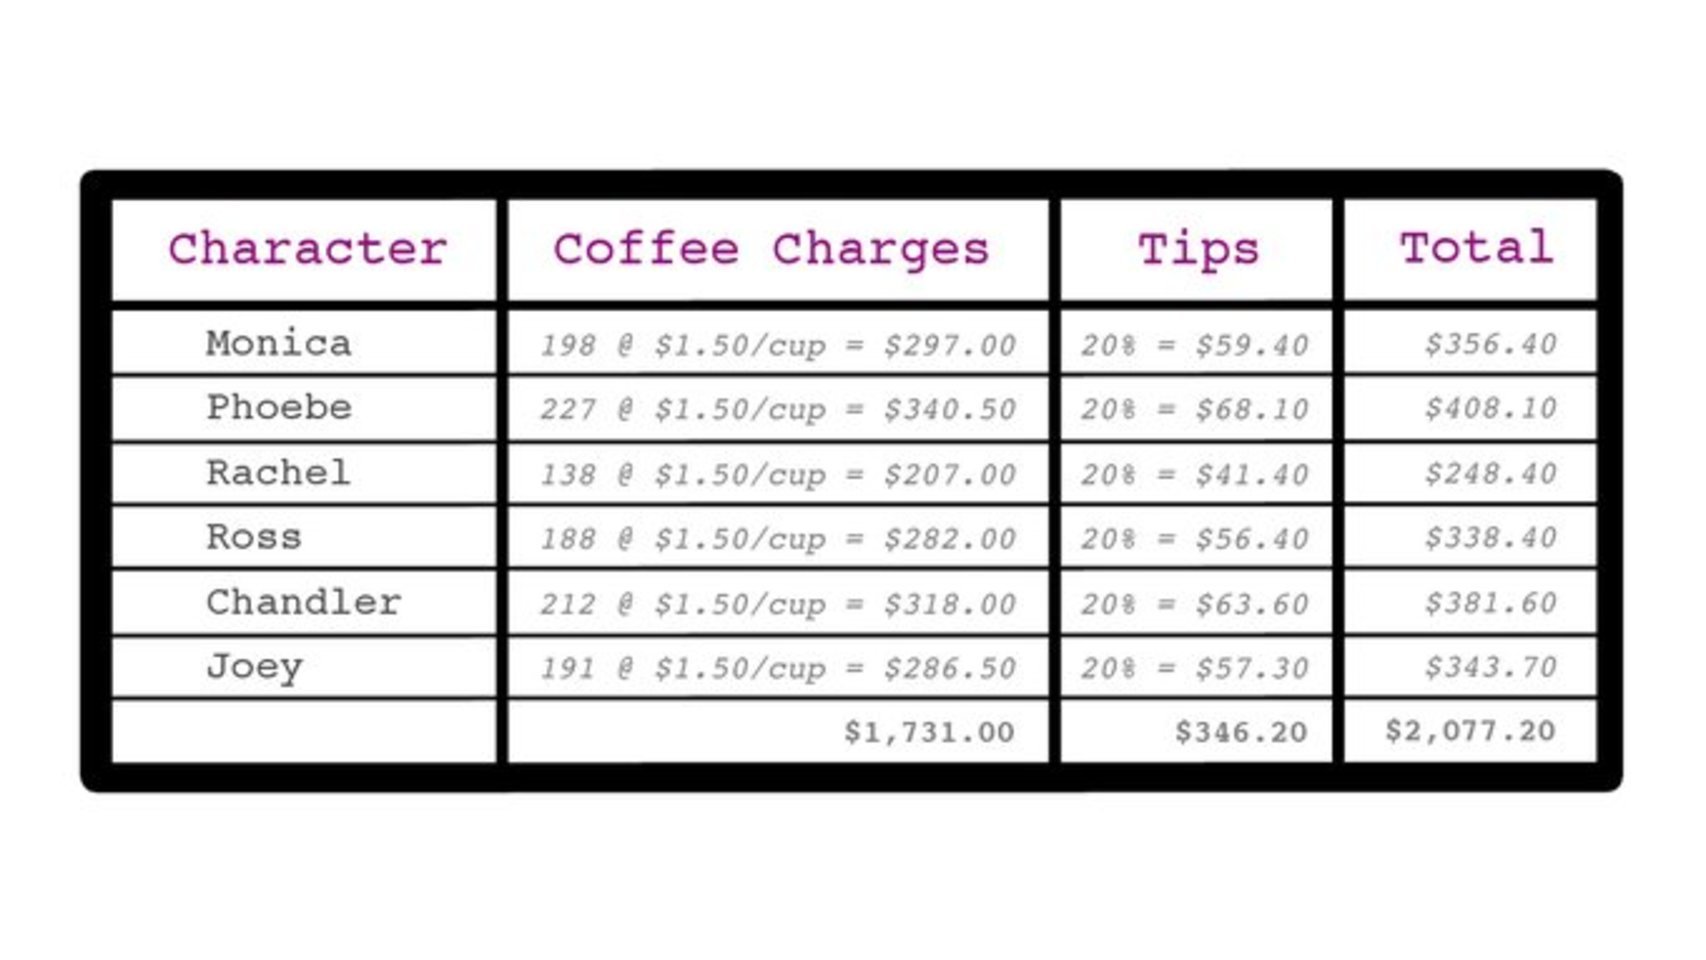 Kit Lovelace calculó el gasto en café